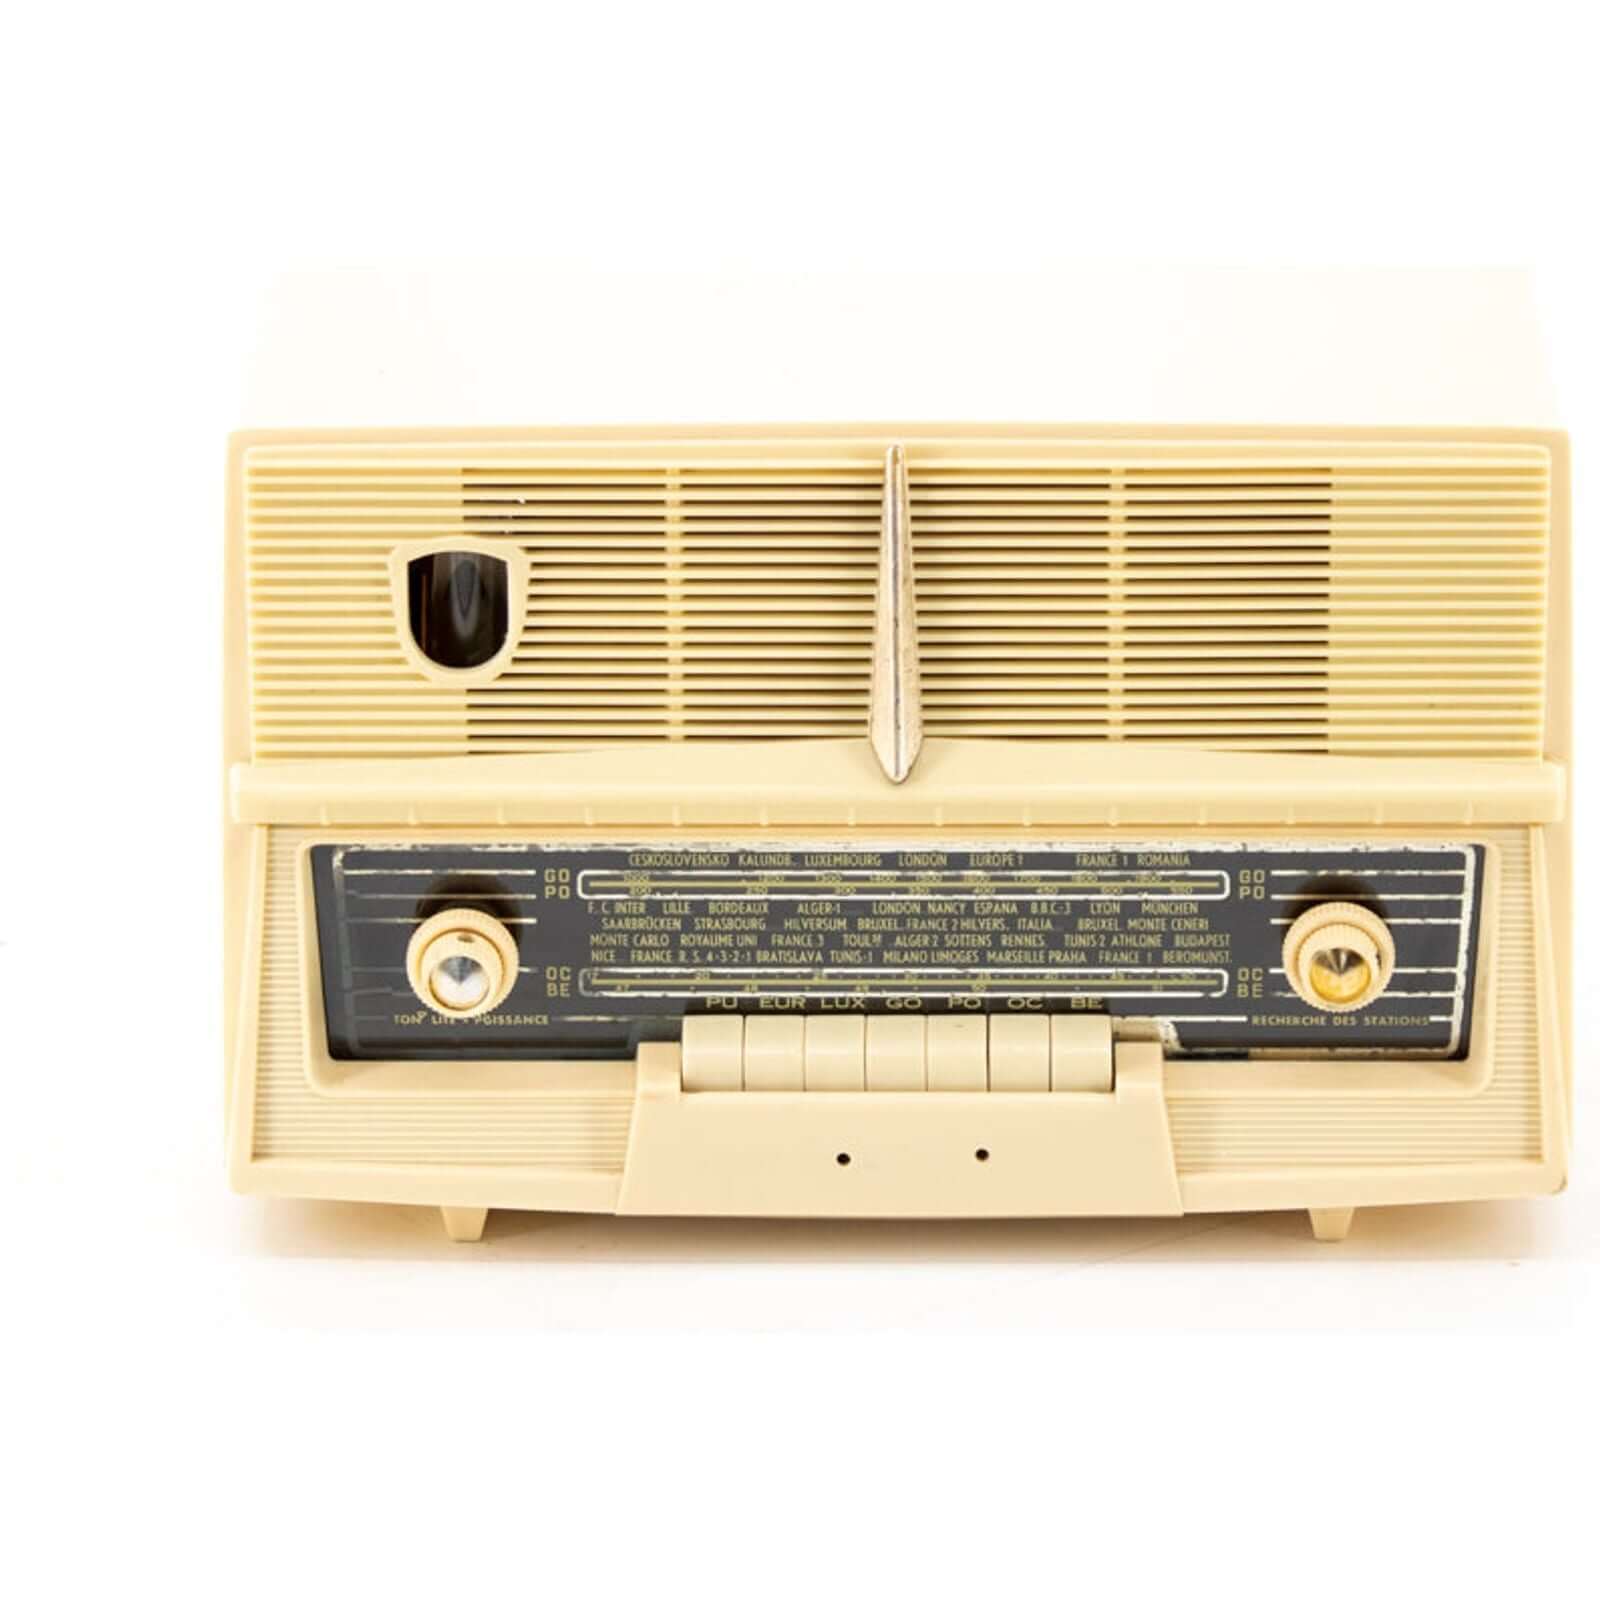 ANCIEN POSTE RADIO vintage bluetooth en backelite de marque